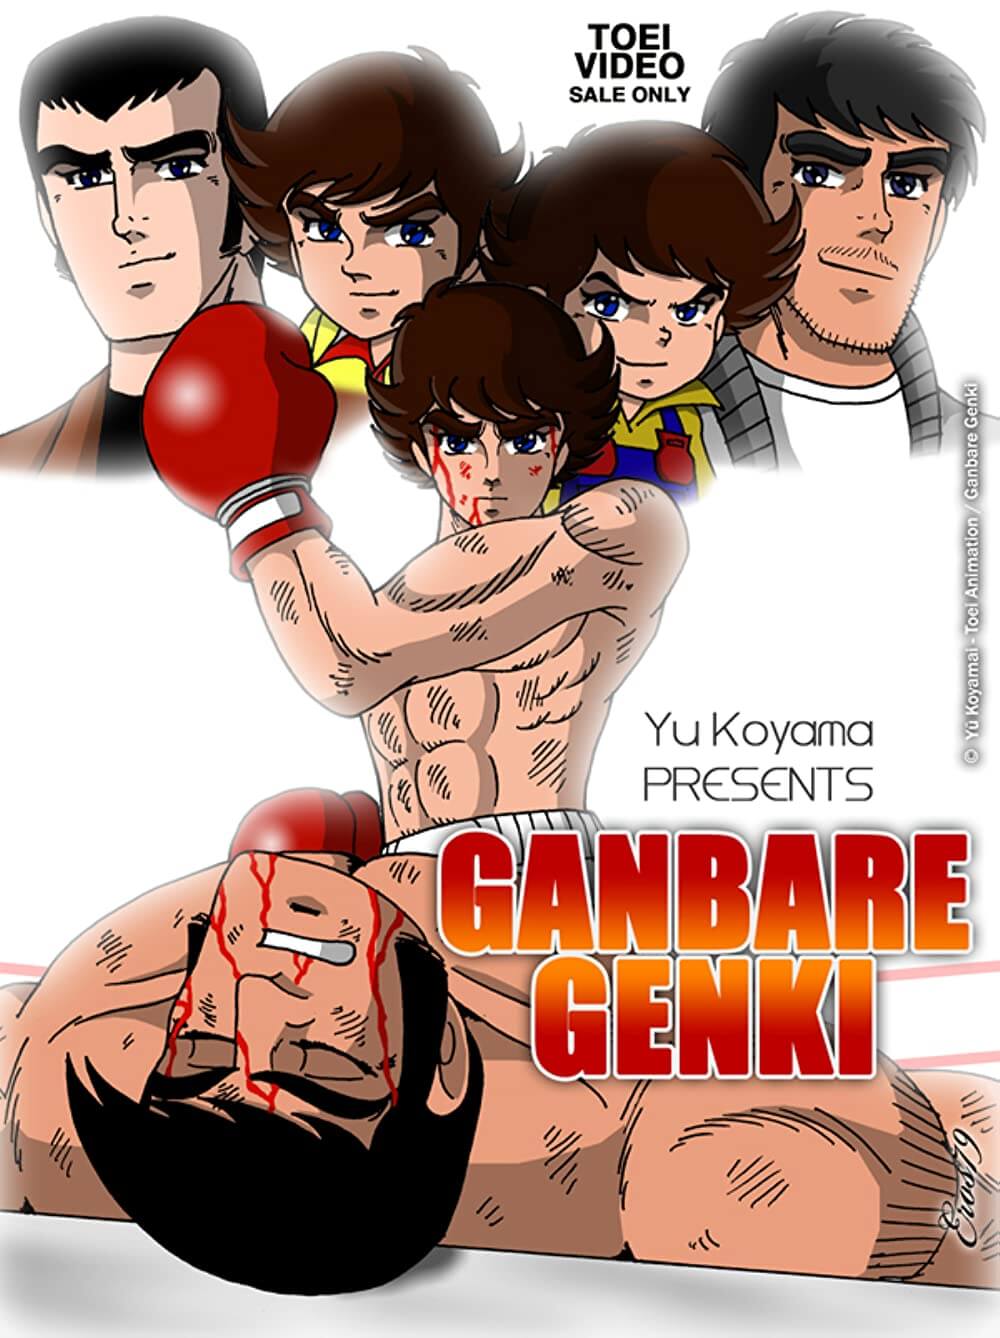 sports manga by Yū Koyama about Genki Horiguchi